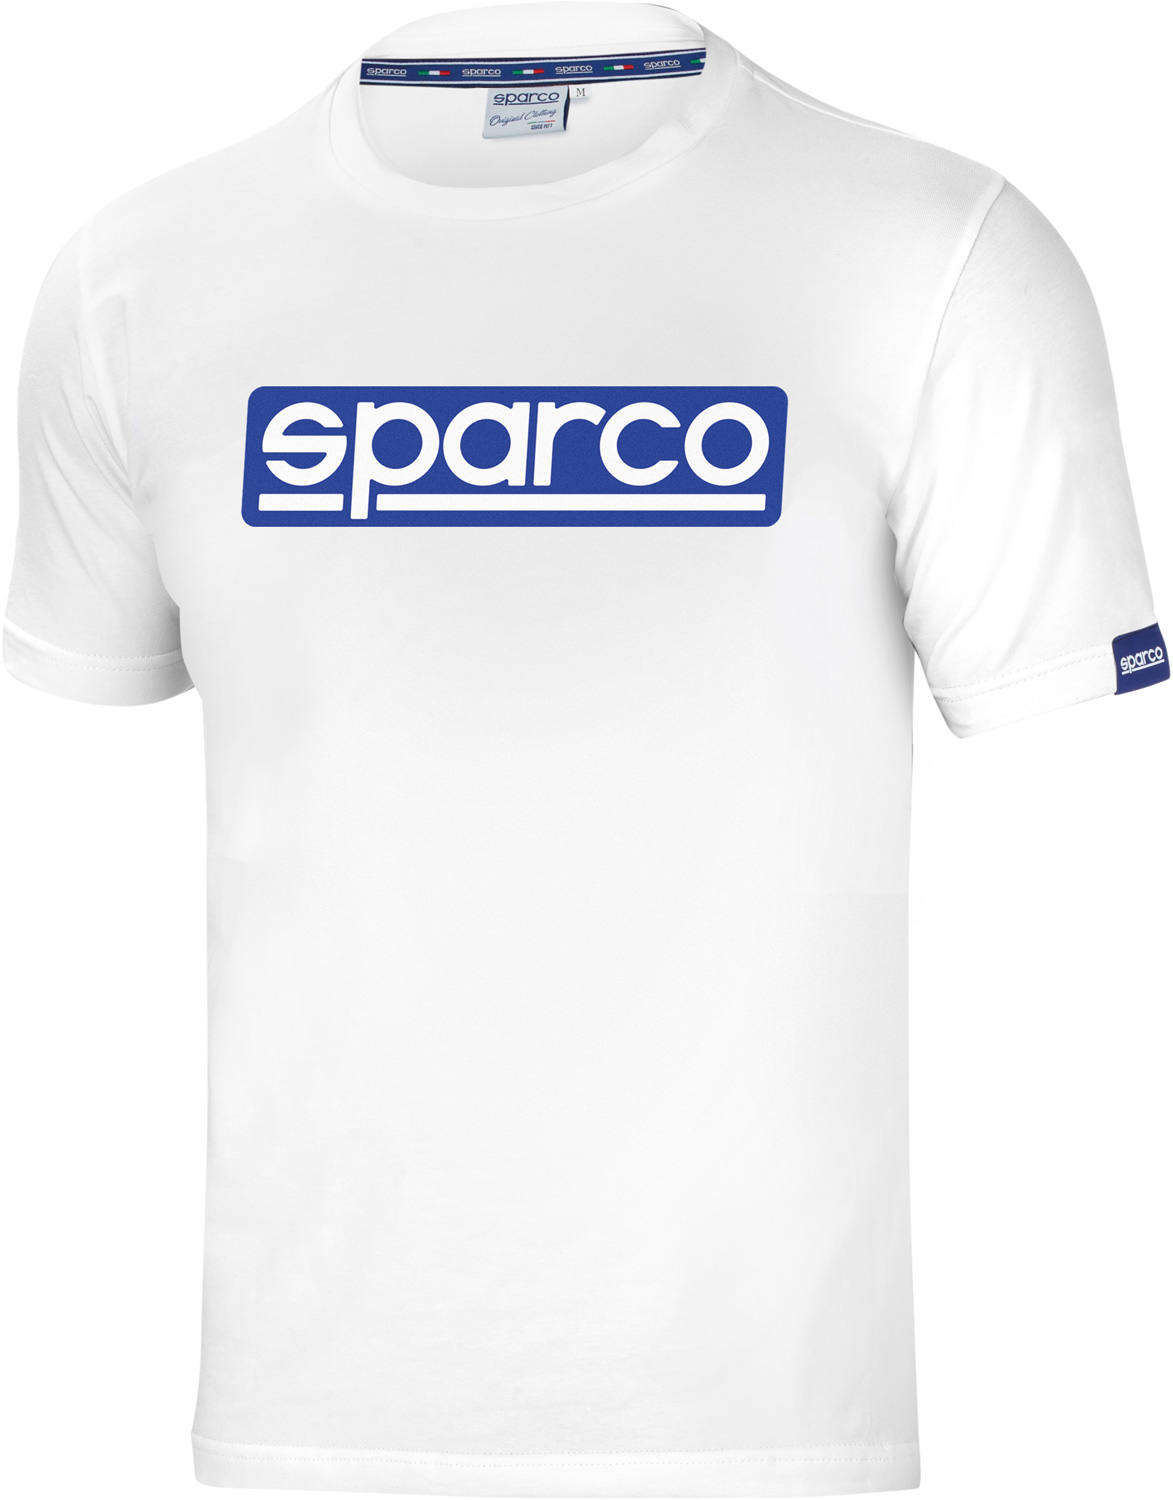 Sparco T-Shirt Original